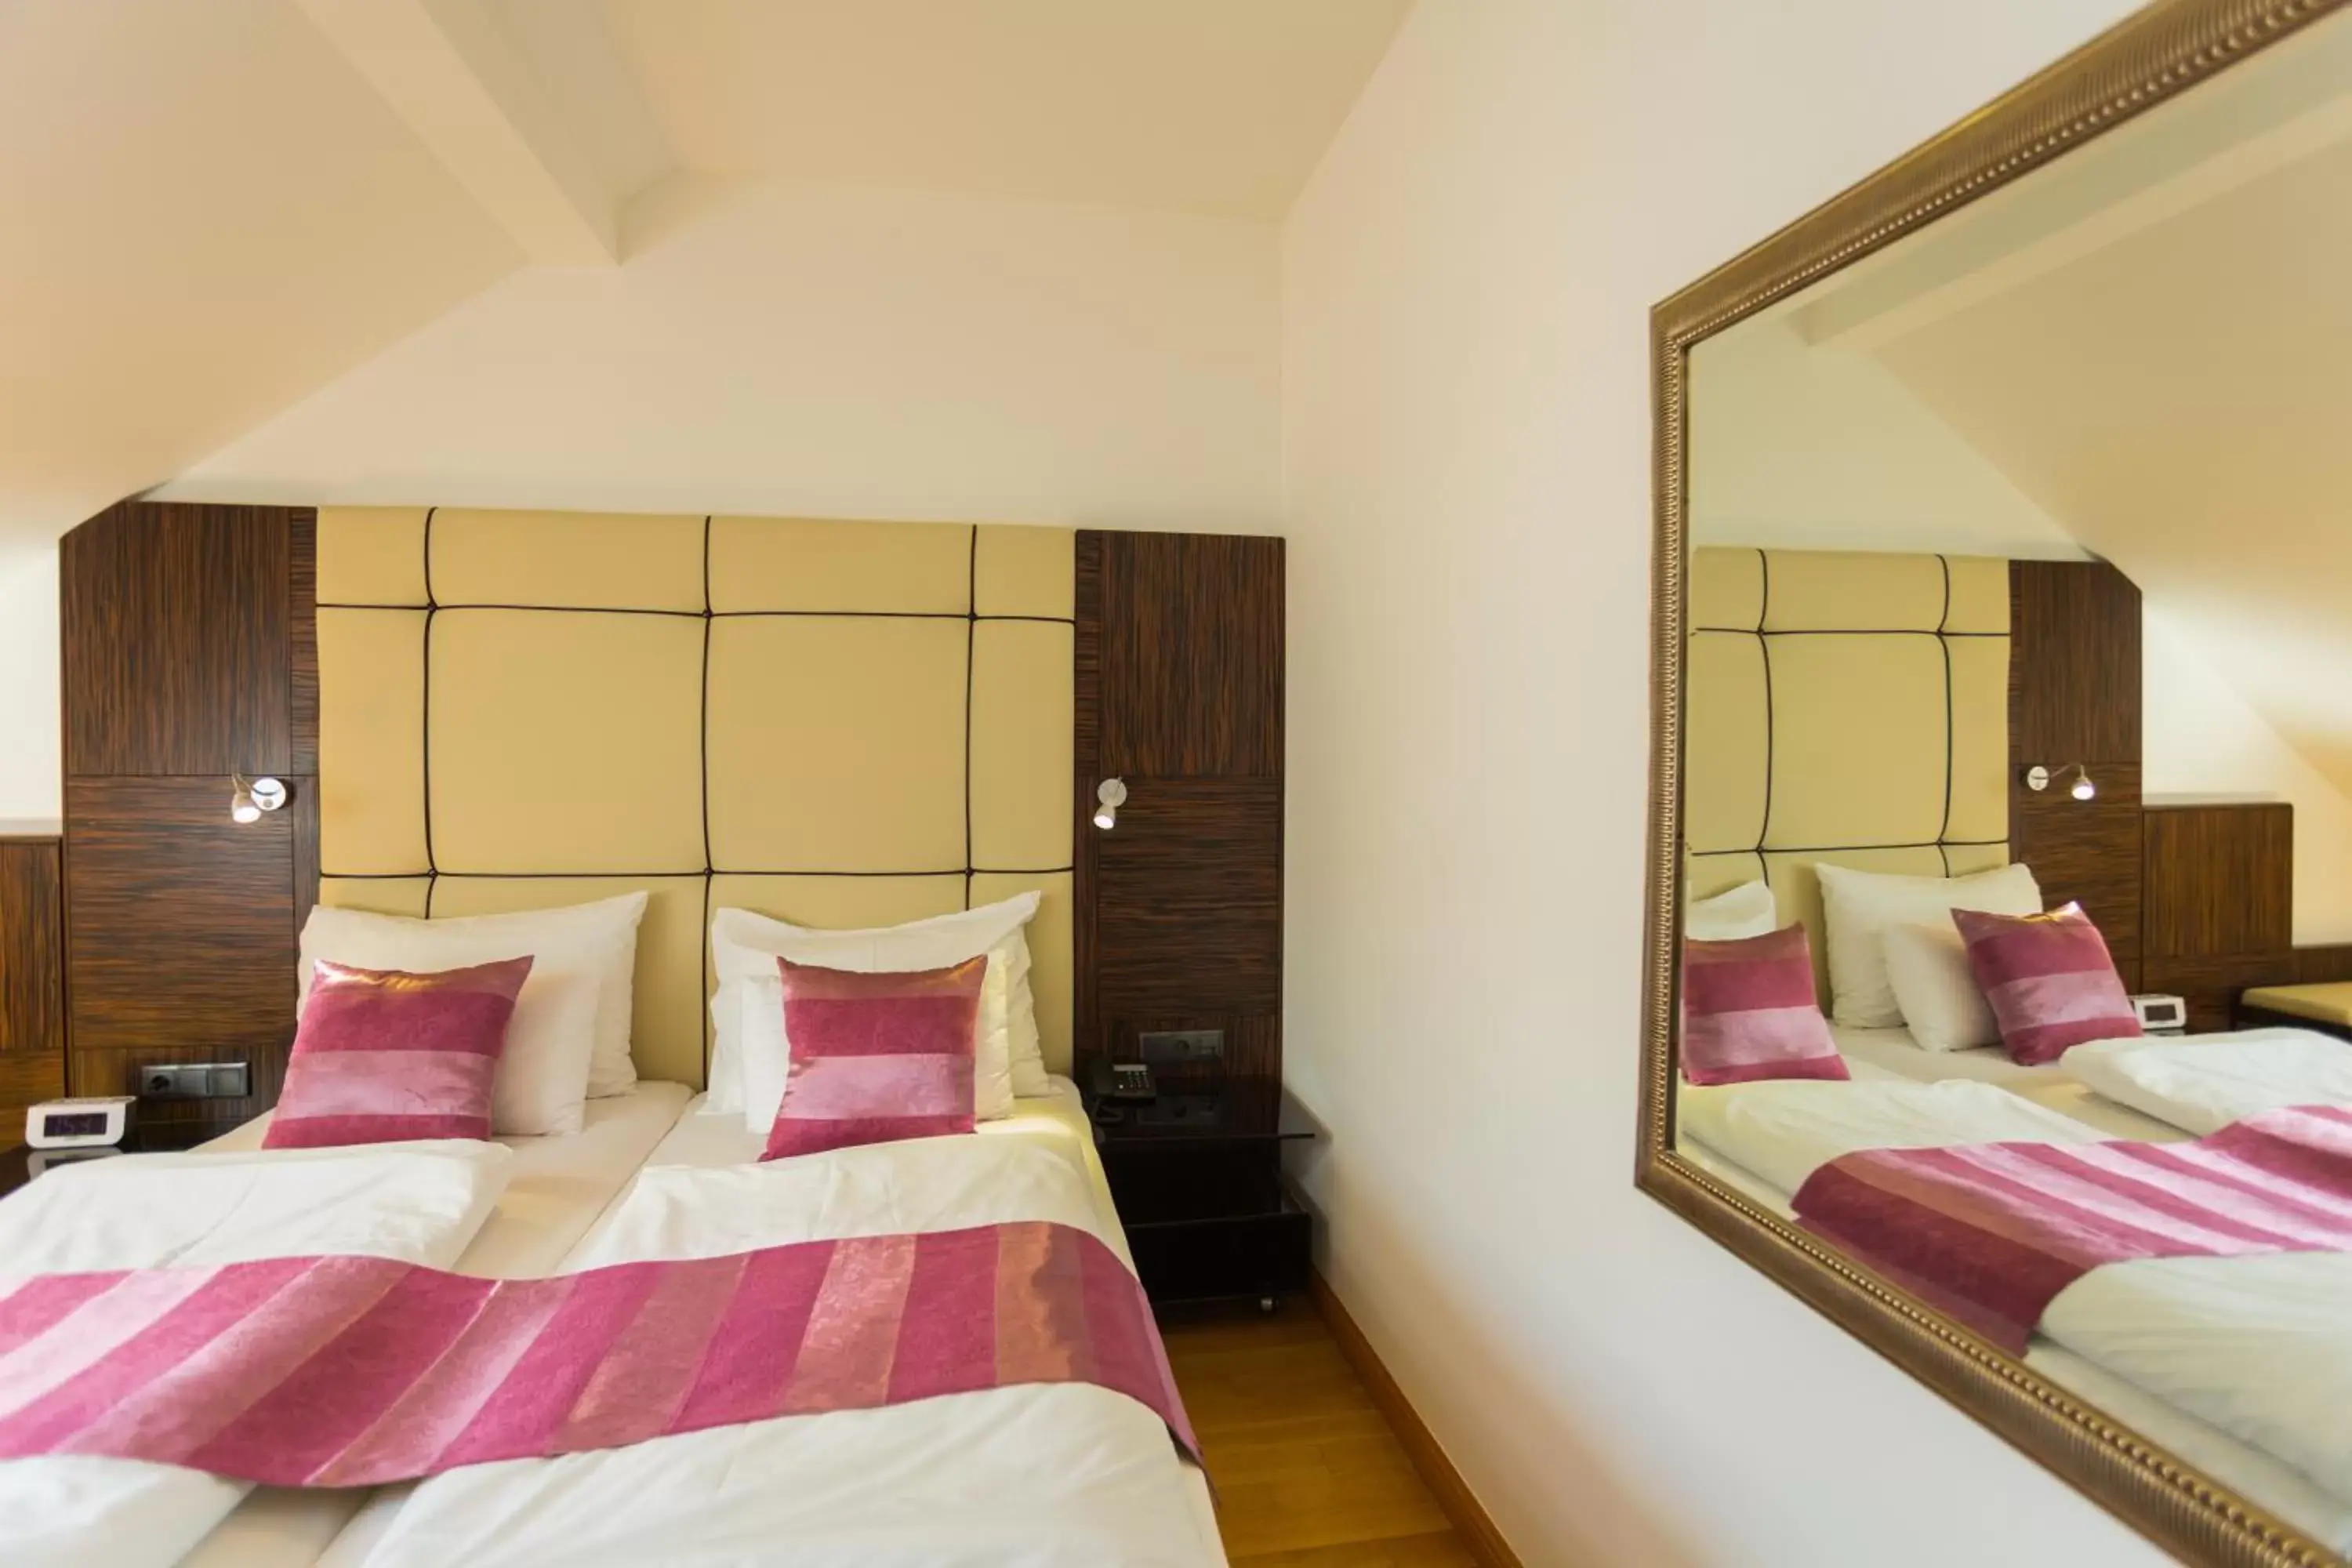 Bedroom, Bed in Best Western Plus Hotel Arcadia